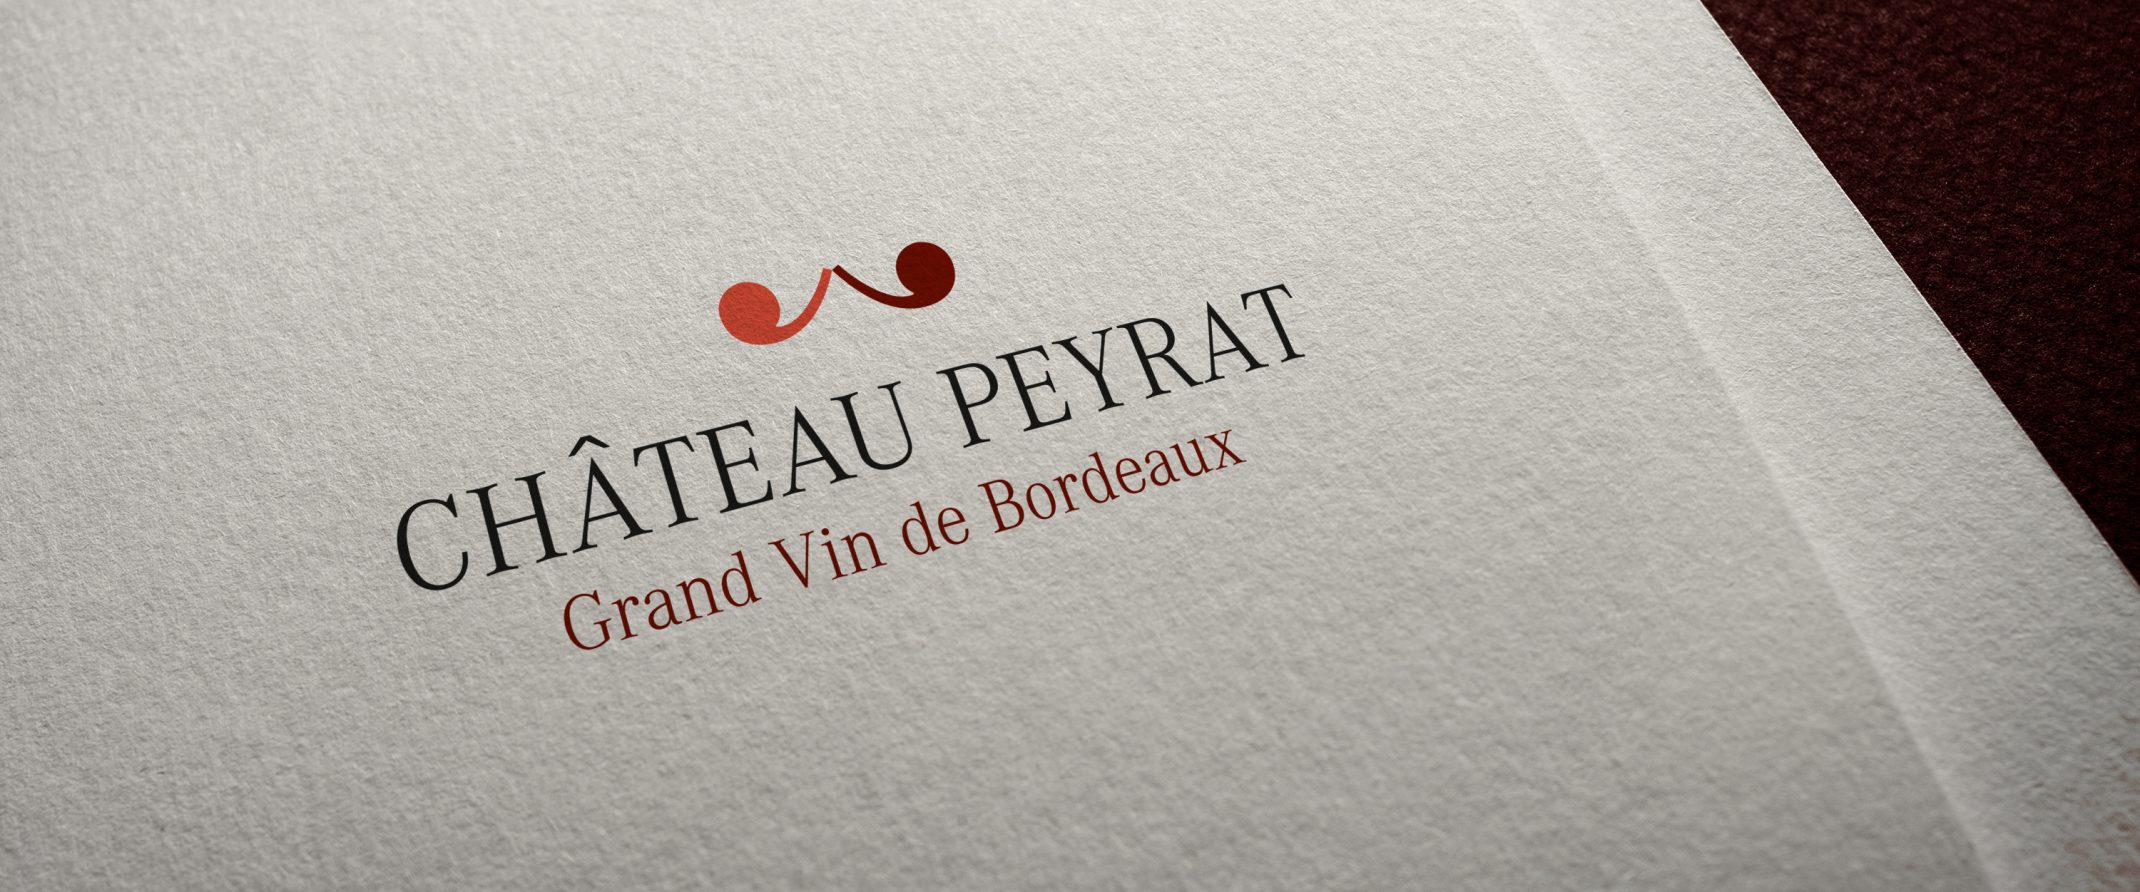 Chateau Peyrat Logo Vignoble Vin